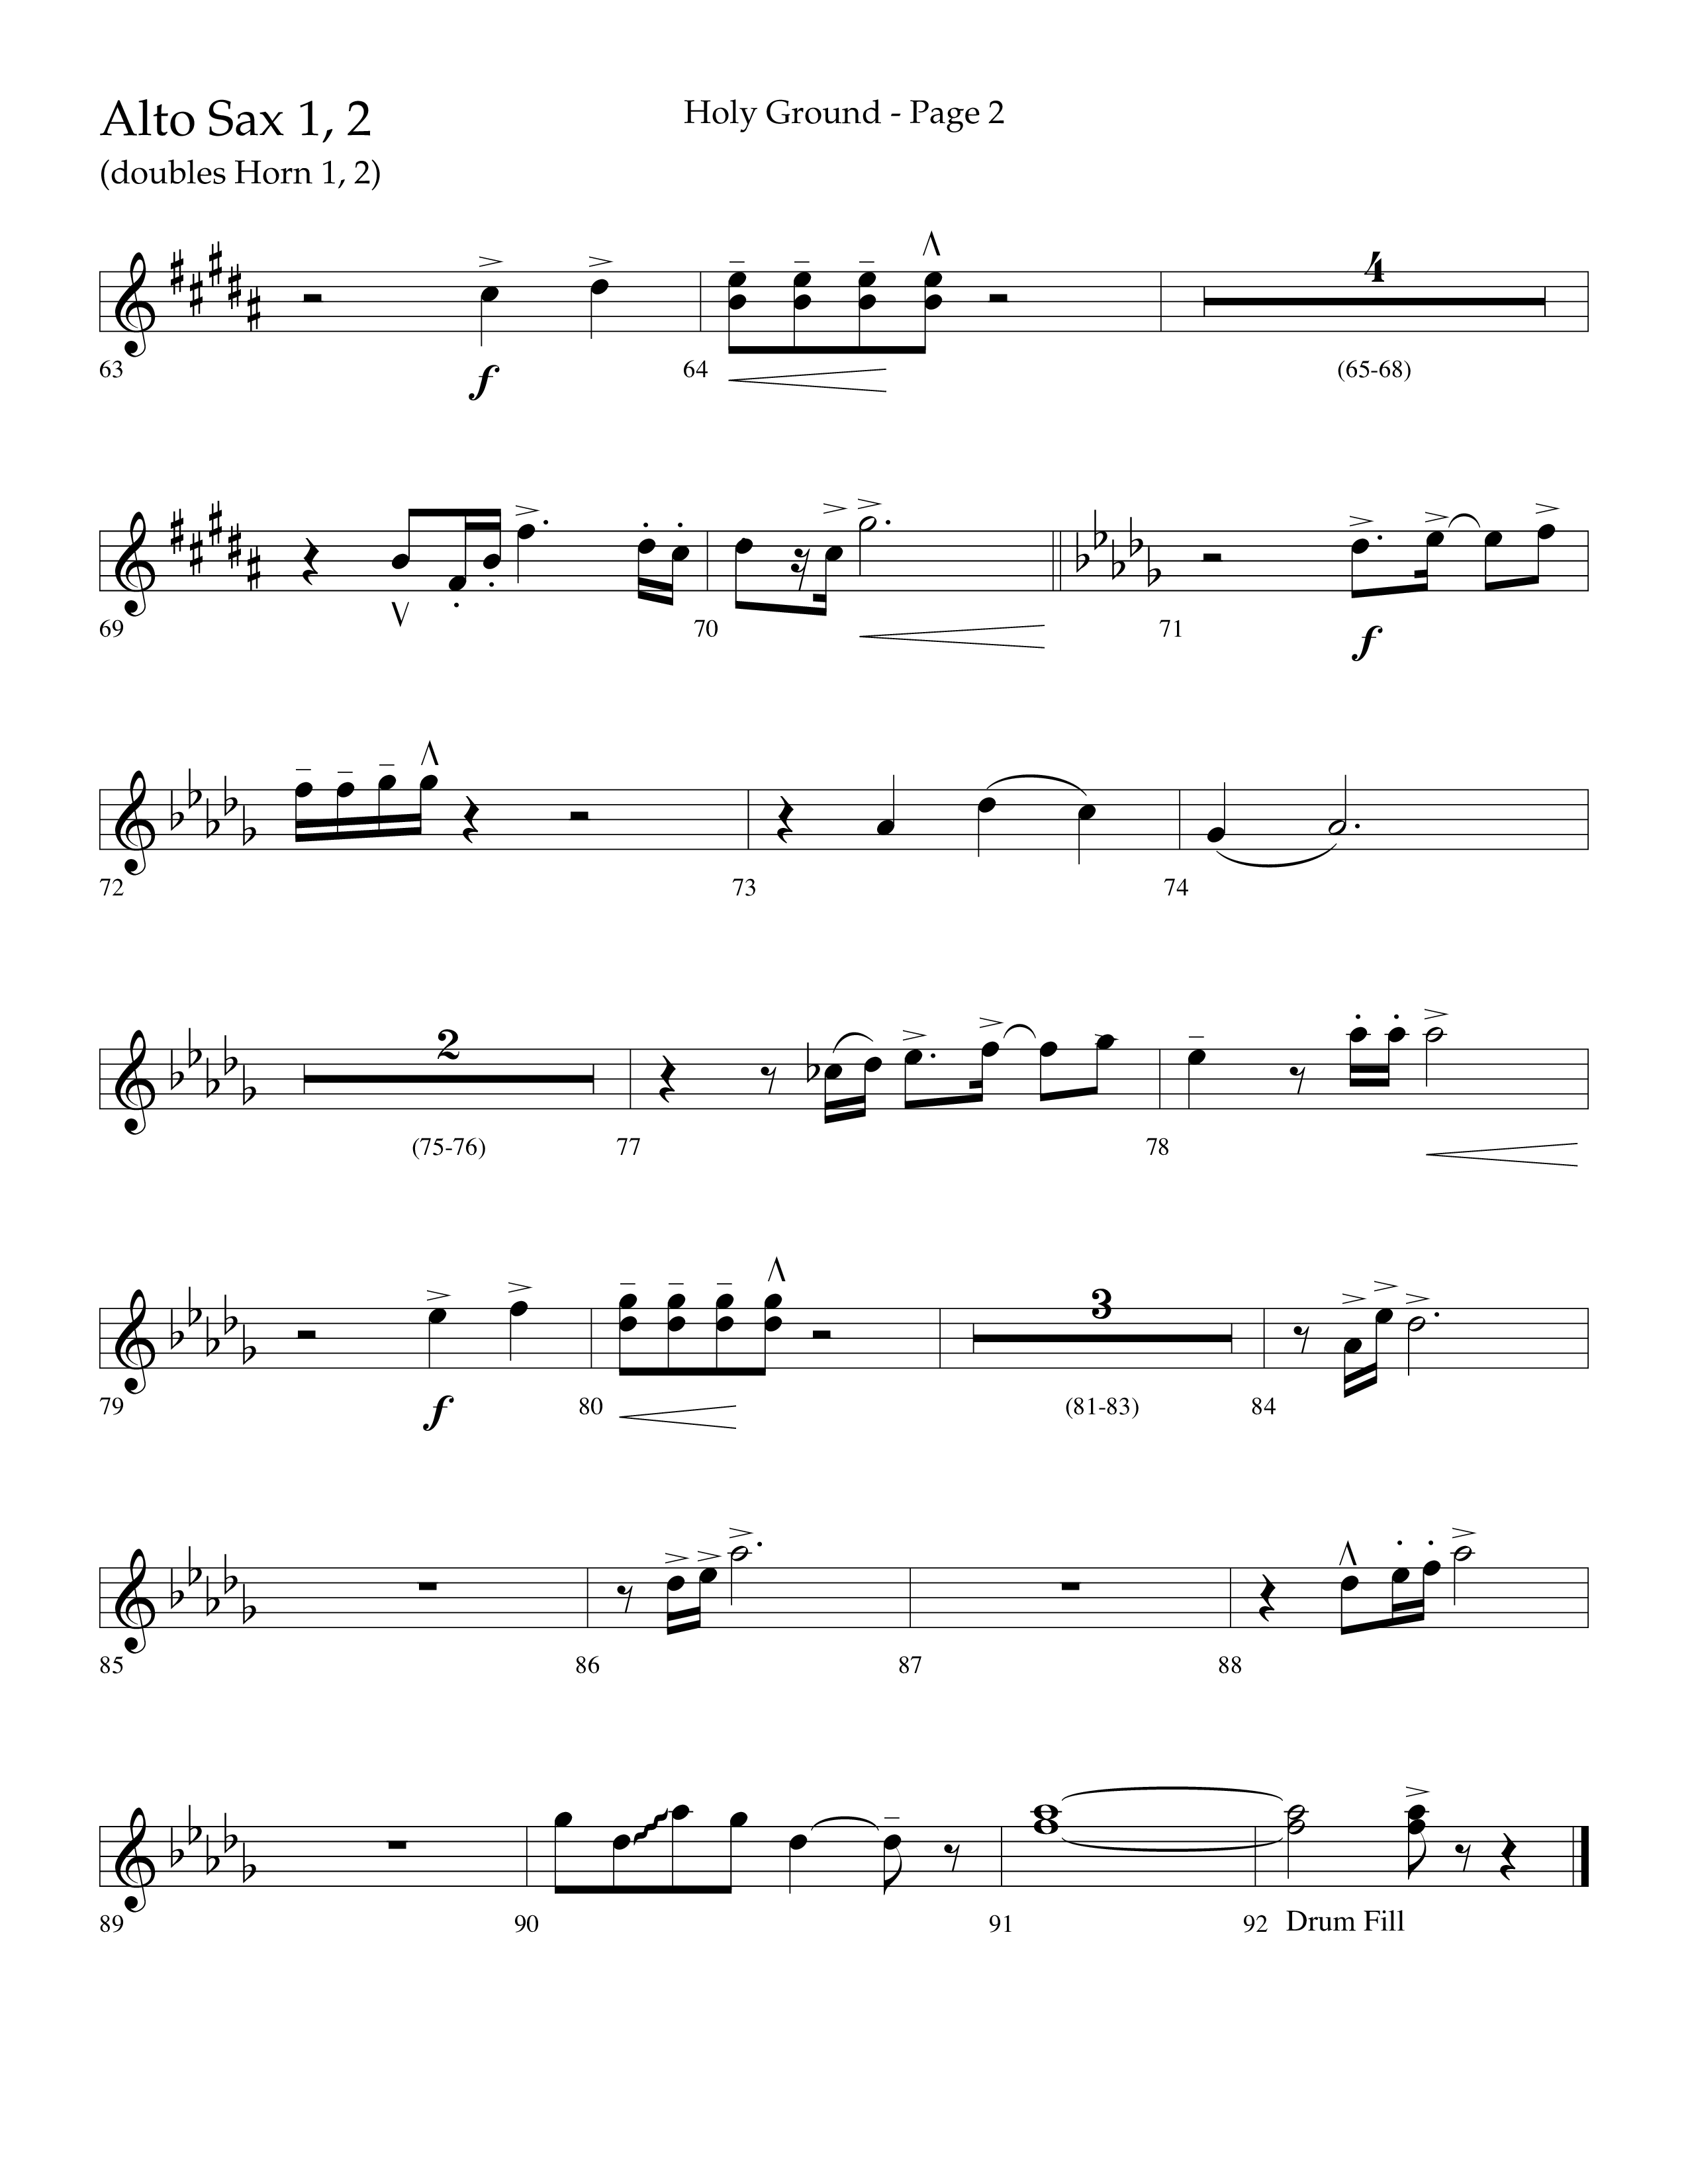 Holy Ground (Choral Anthem SATB) Alto Sax 1/2 (Lifeway Choral / Arr. Bradley Knight)